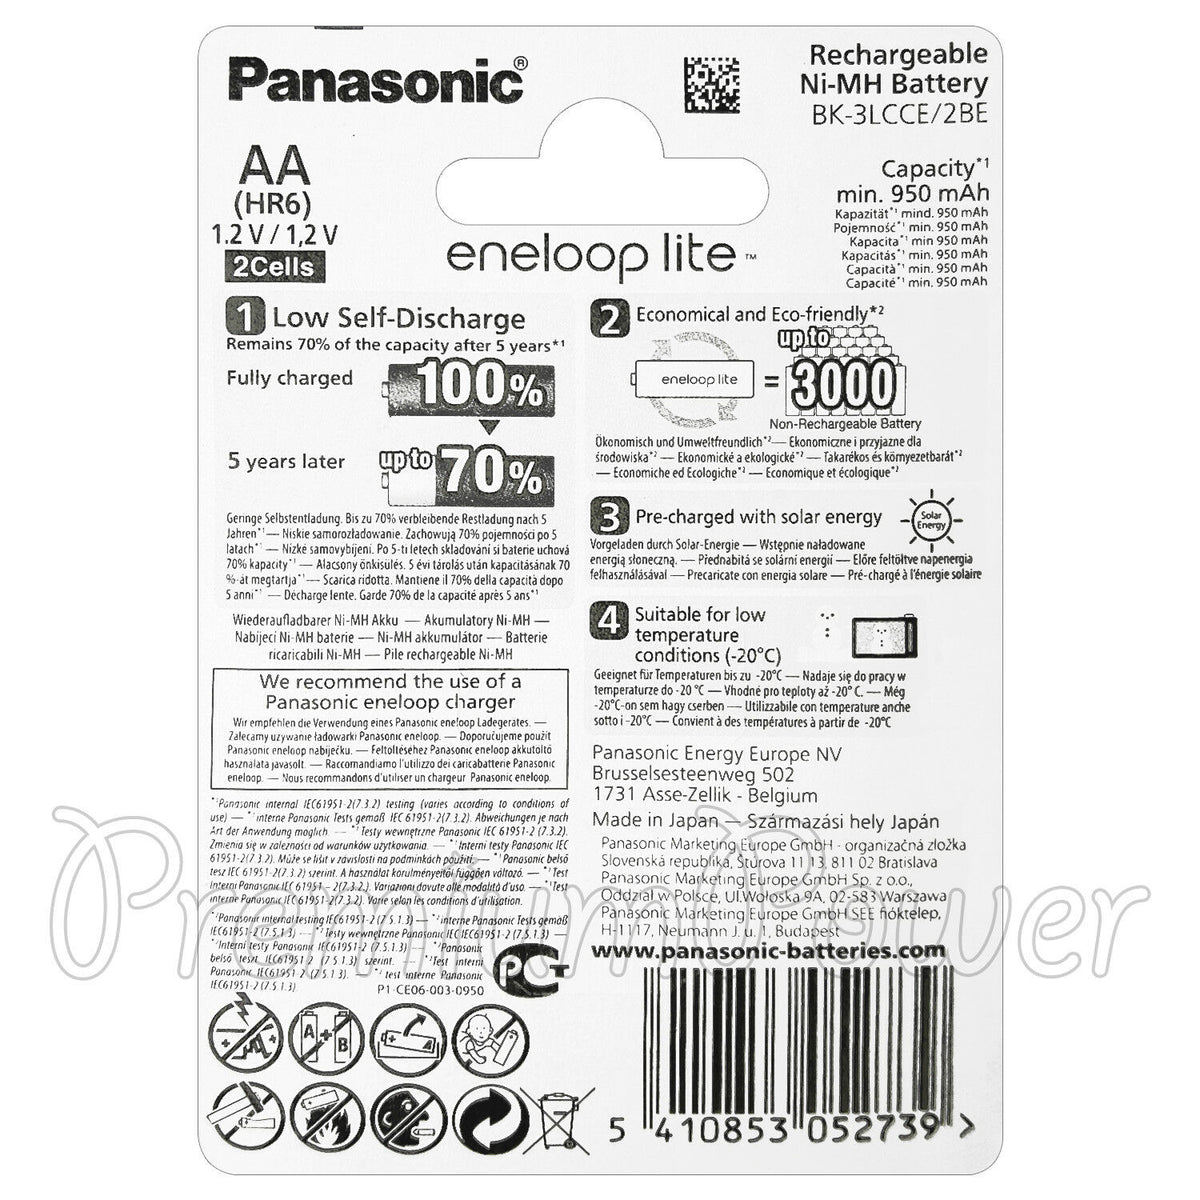 Panasonic Eneloop LITE AA 950mAh Rechargeable Batteries - 2 Pack